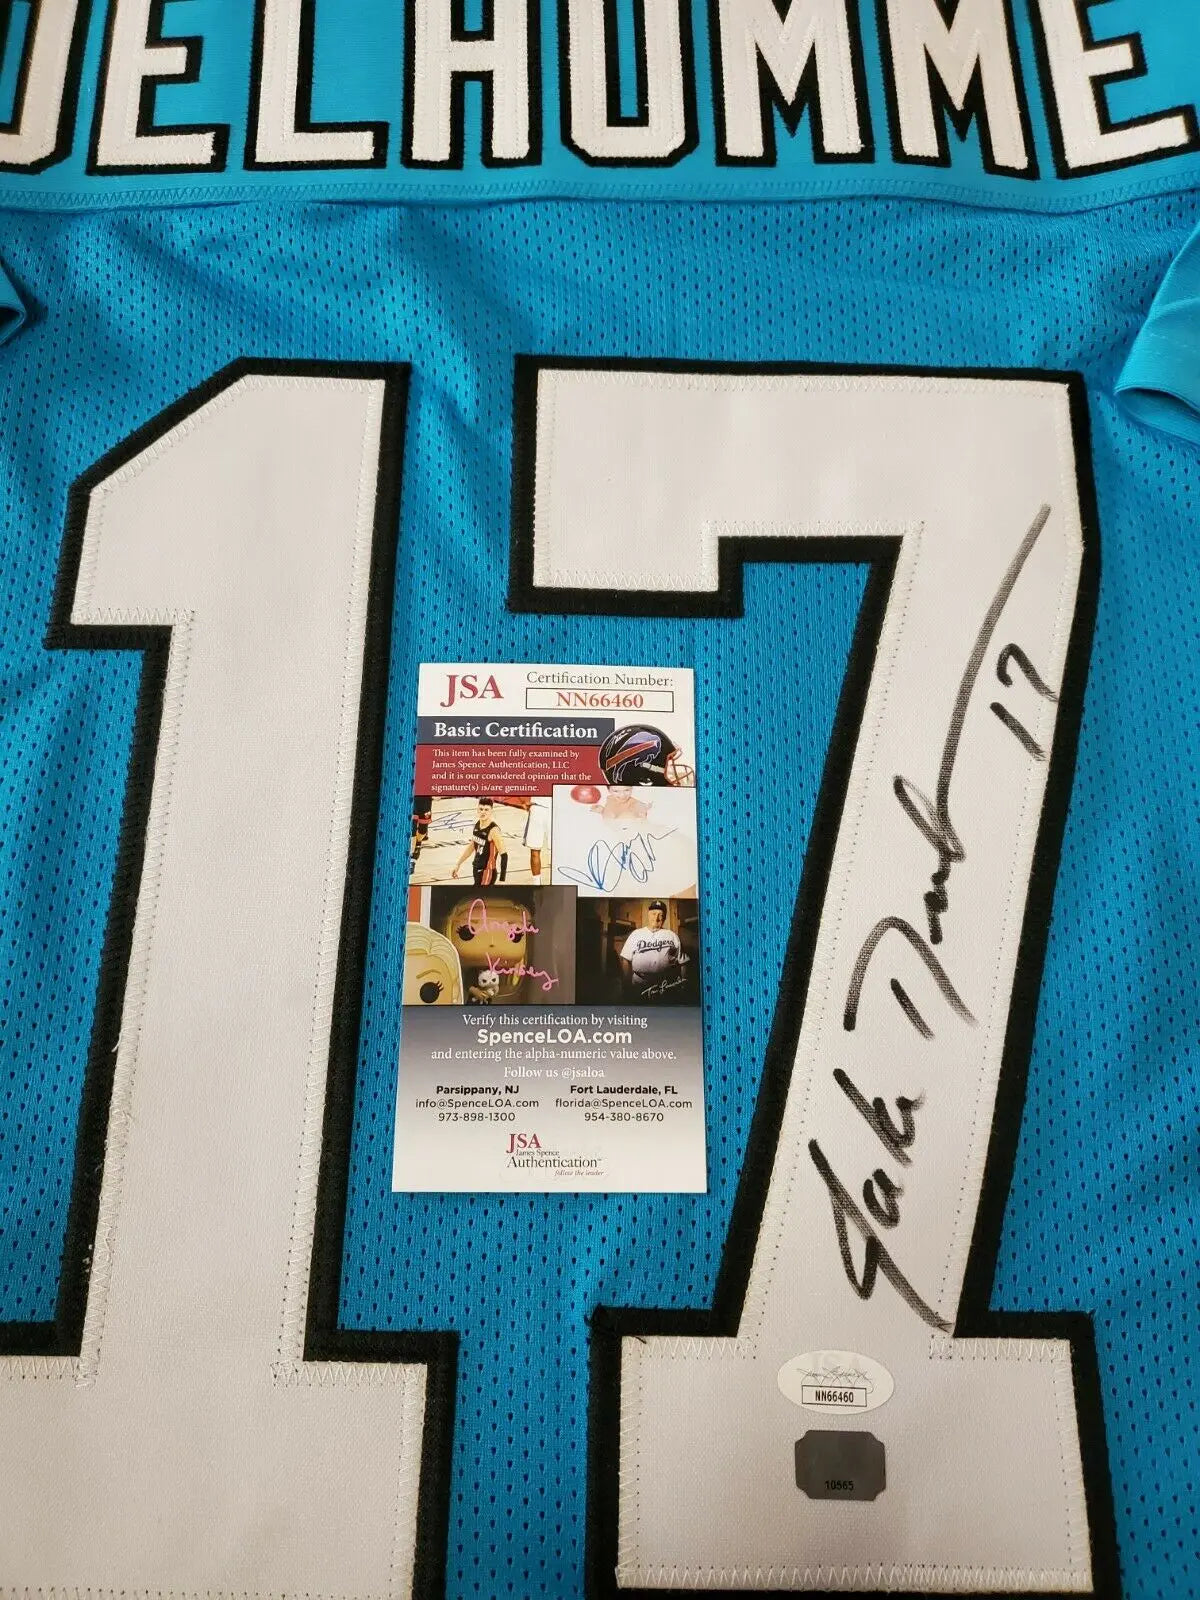 MVP Authentics Carolina Panthers Jake Delhomme Autographed Signed Jersey Jsa  Coa 225 sports jersey framing , jersey framing